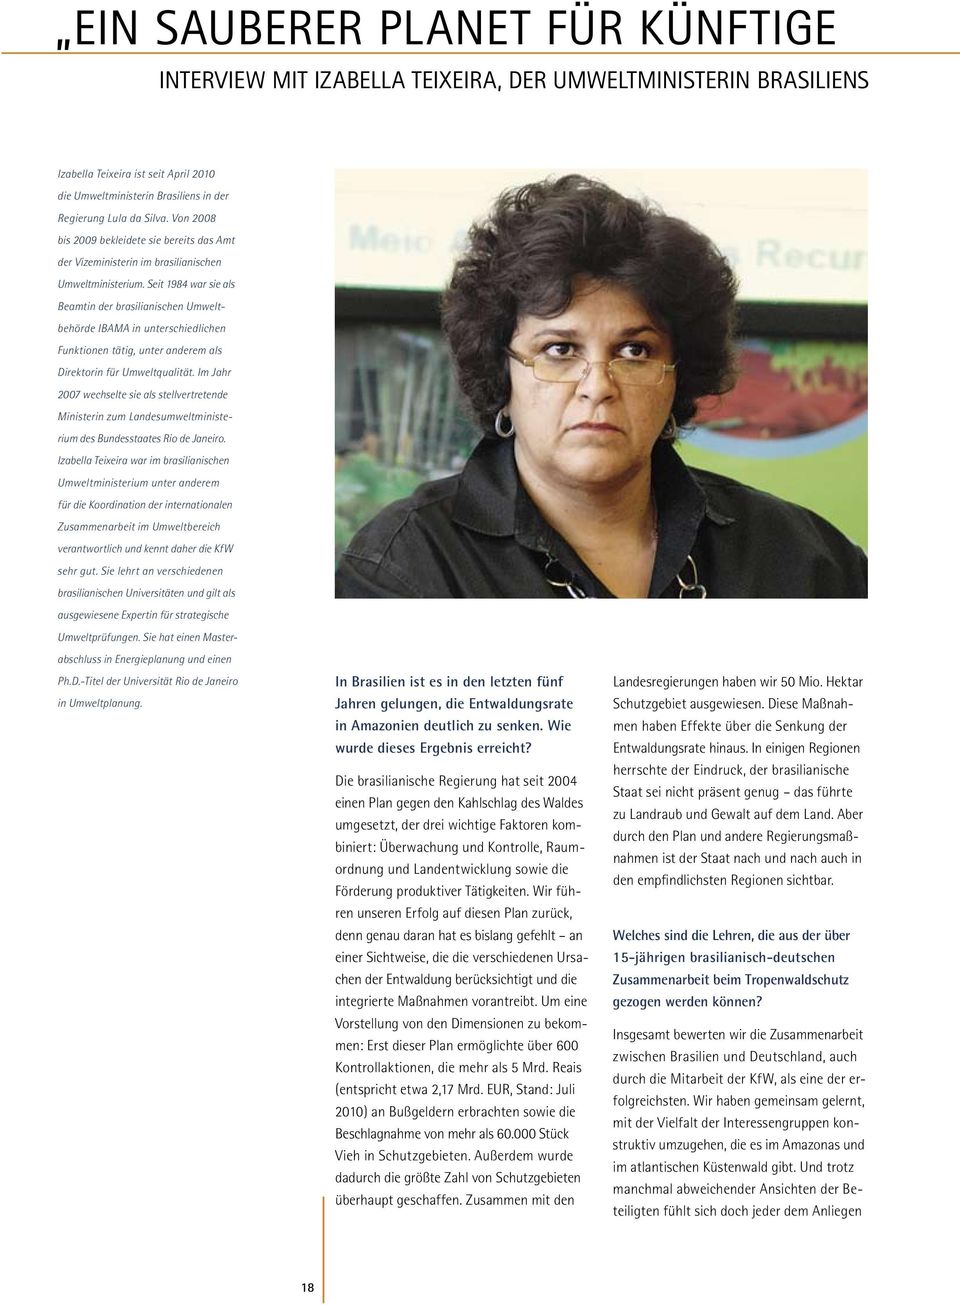 Seit 1984 war sie als Beamtin der brasilianischen Umweltbehörde IBAMA in unterschiedlichen Funktionen tätig, unter anderem als Direktorin für Umweltqualität.